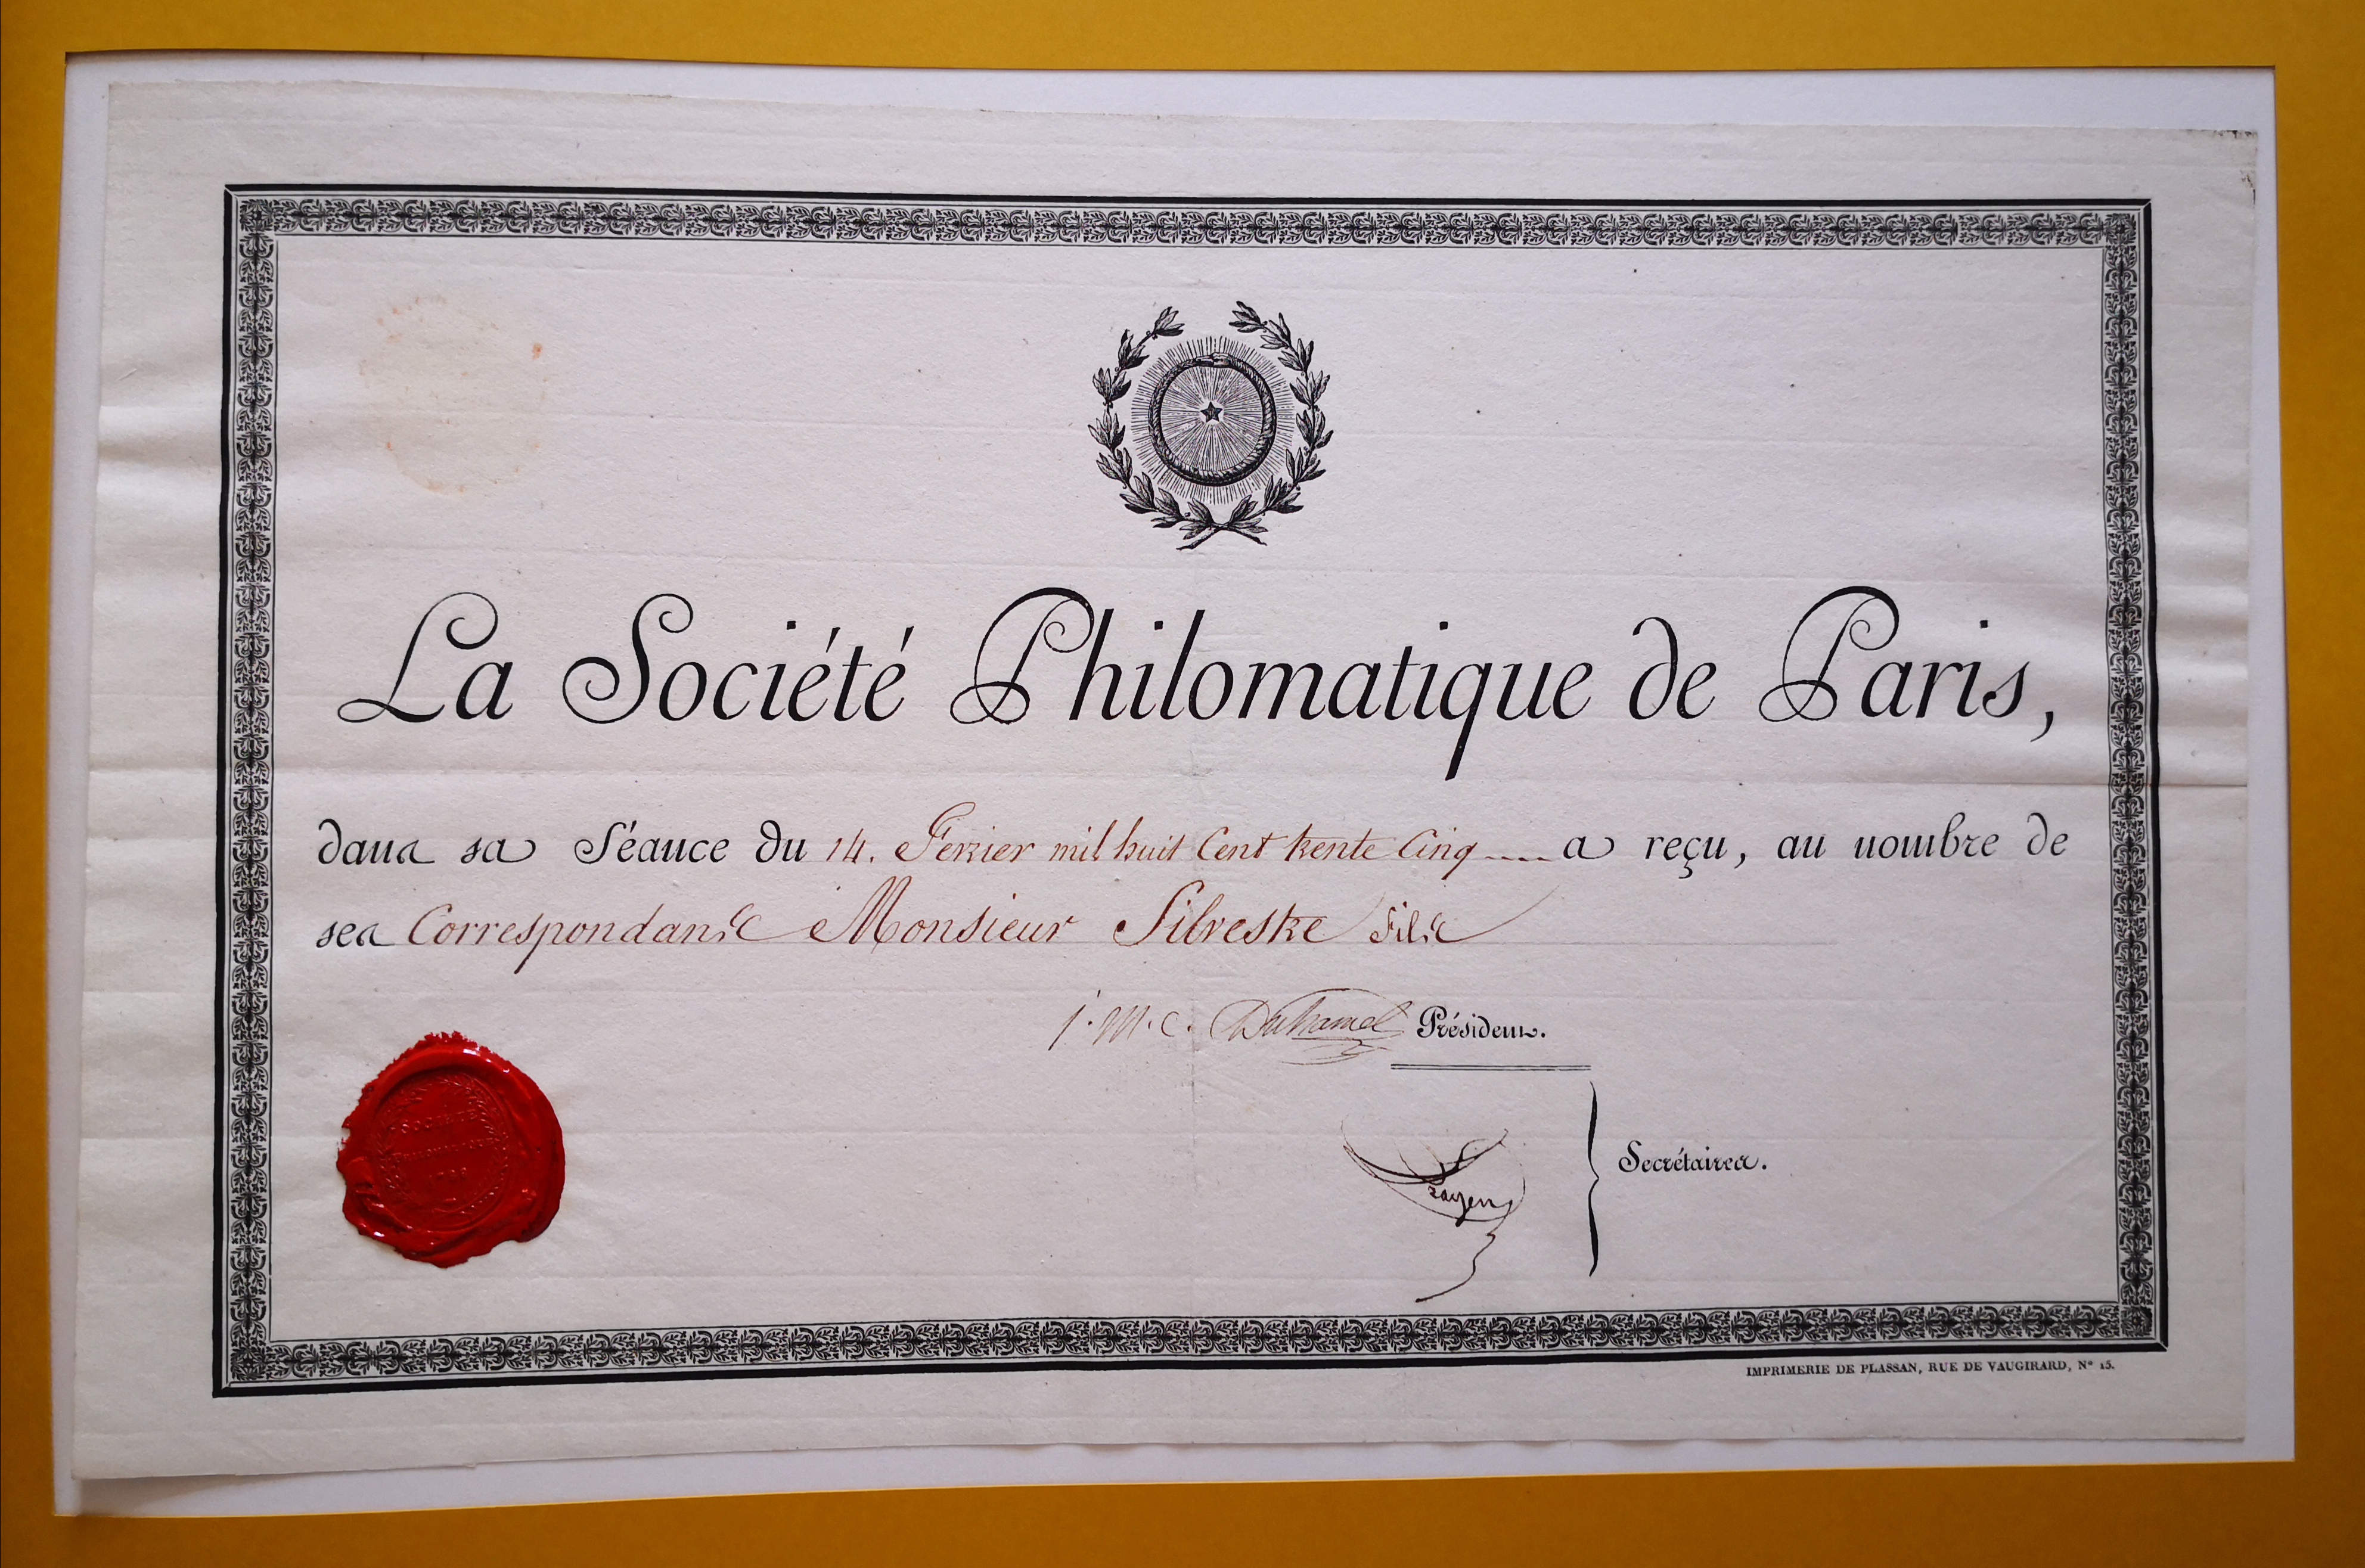  Diplôme de correspondant de la Société Philomatique de Paris décerné à Édouard de Silvestre - Document 1